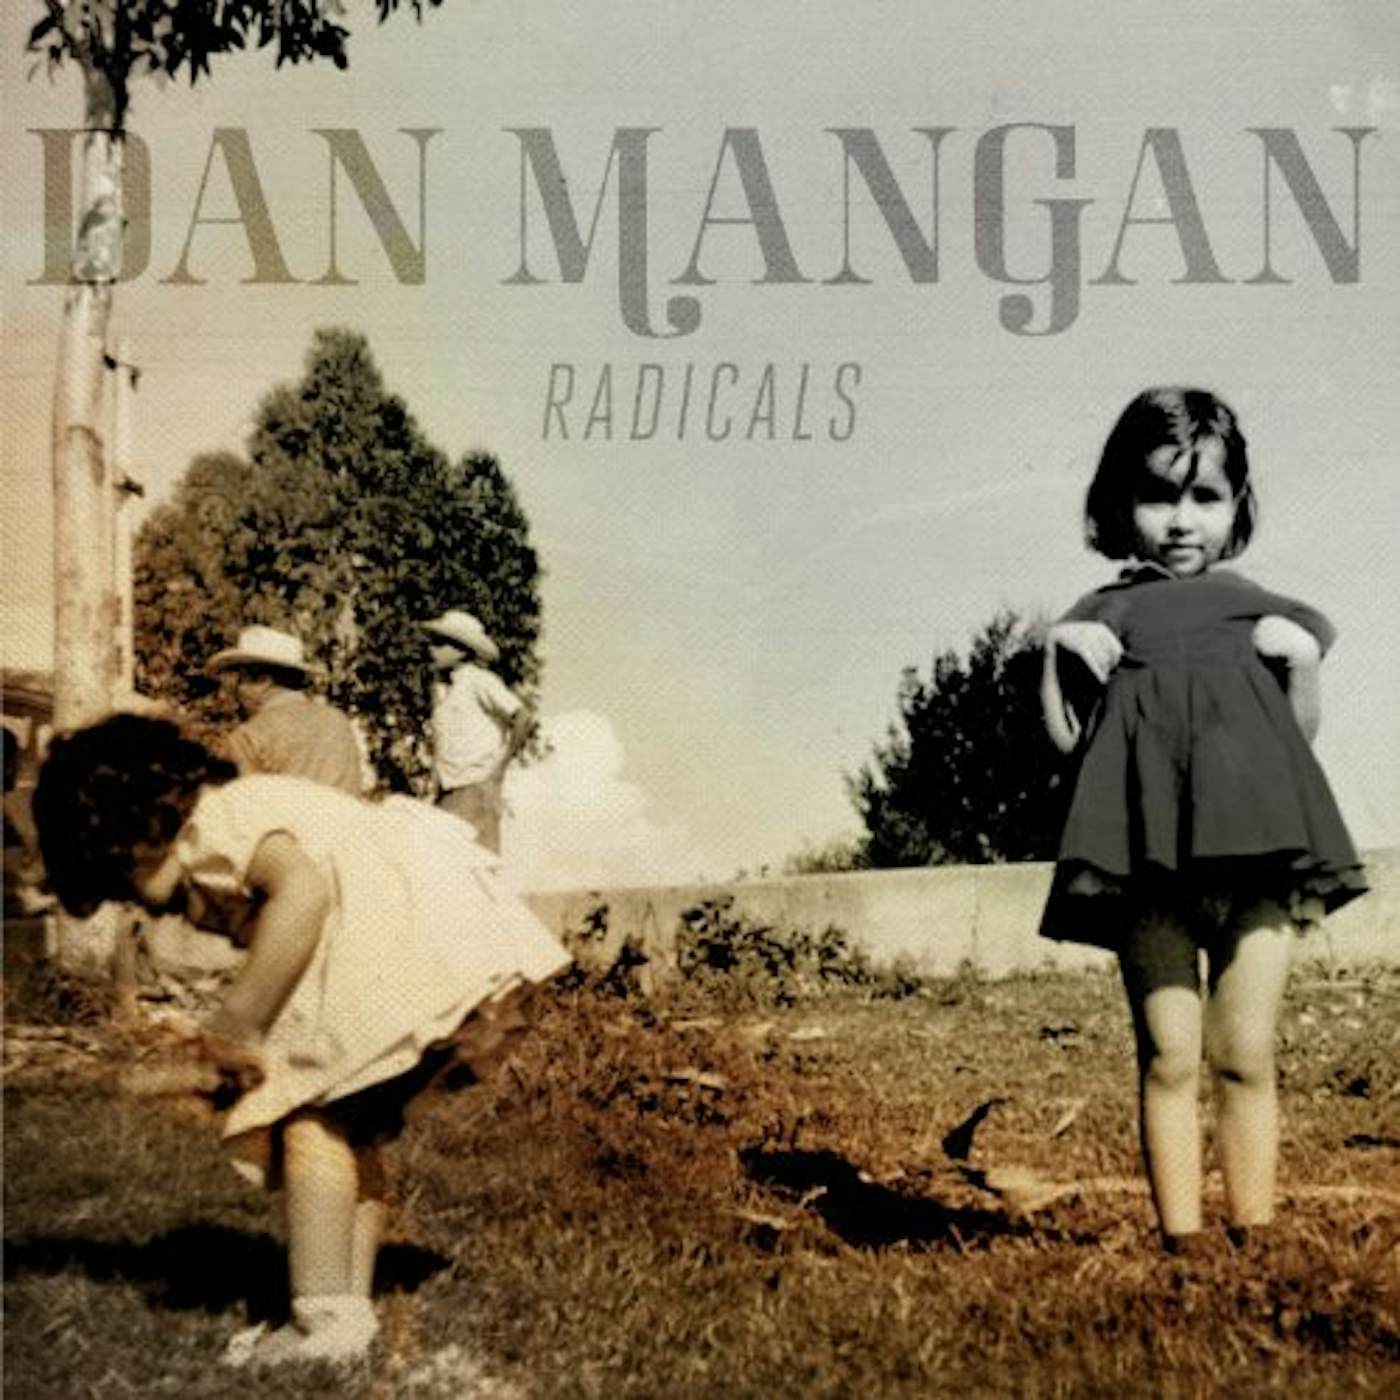 Dan Mangan Radicals Vinyl Record